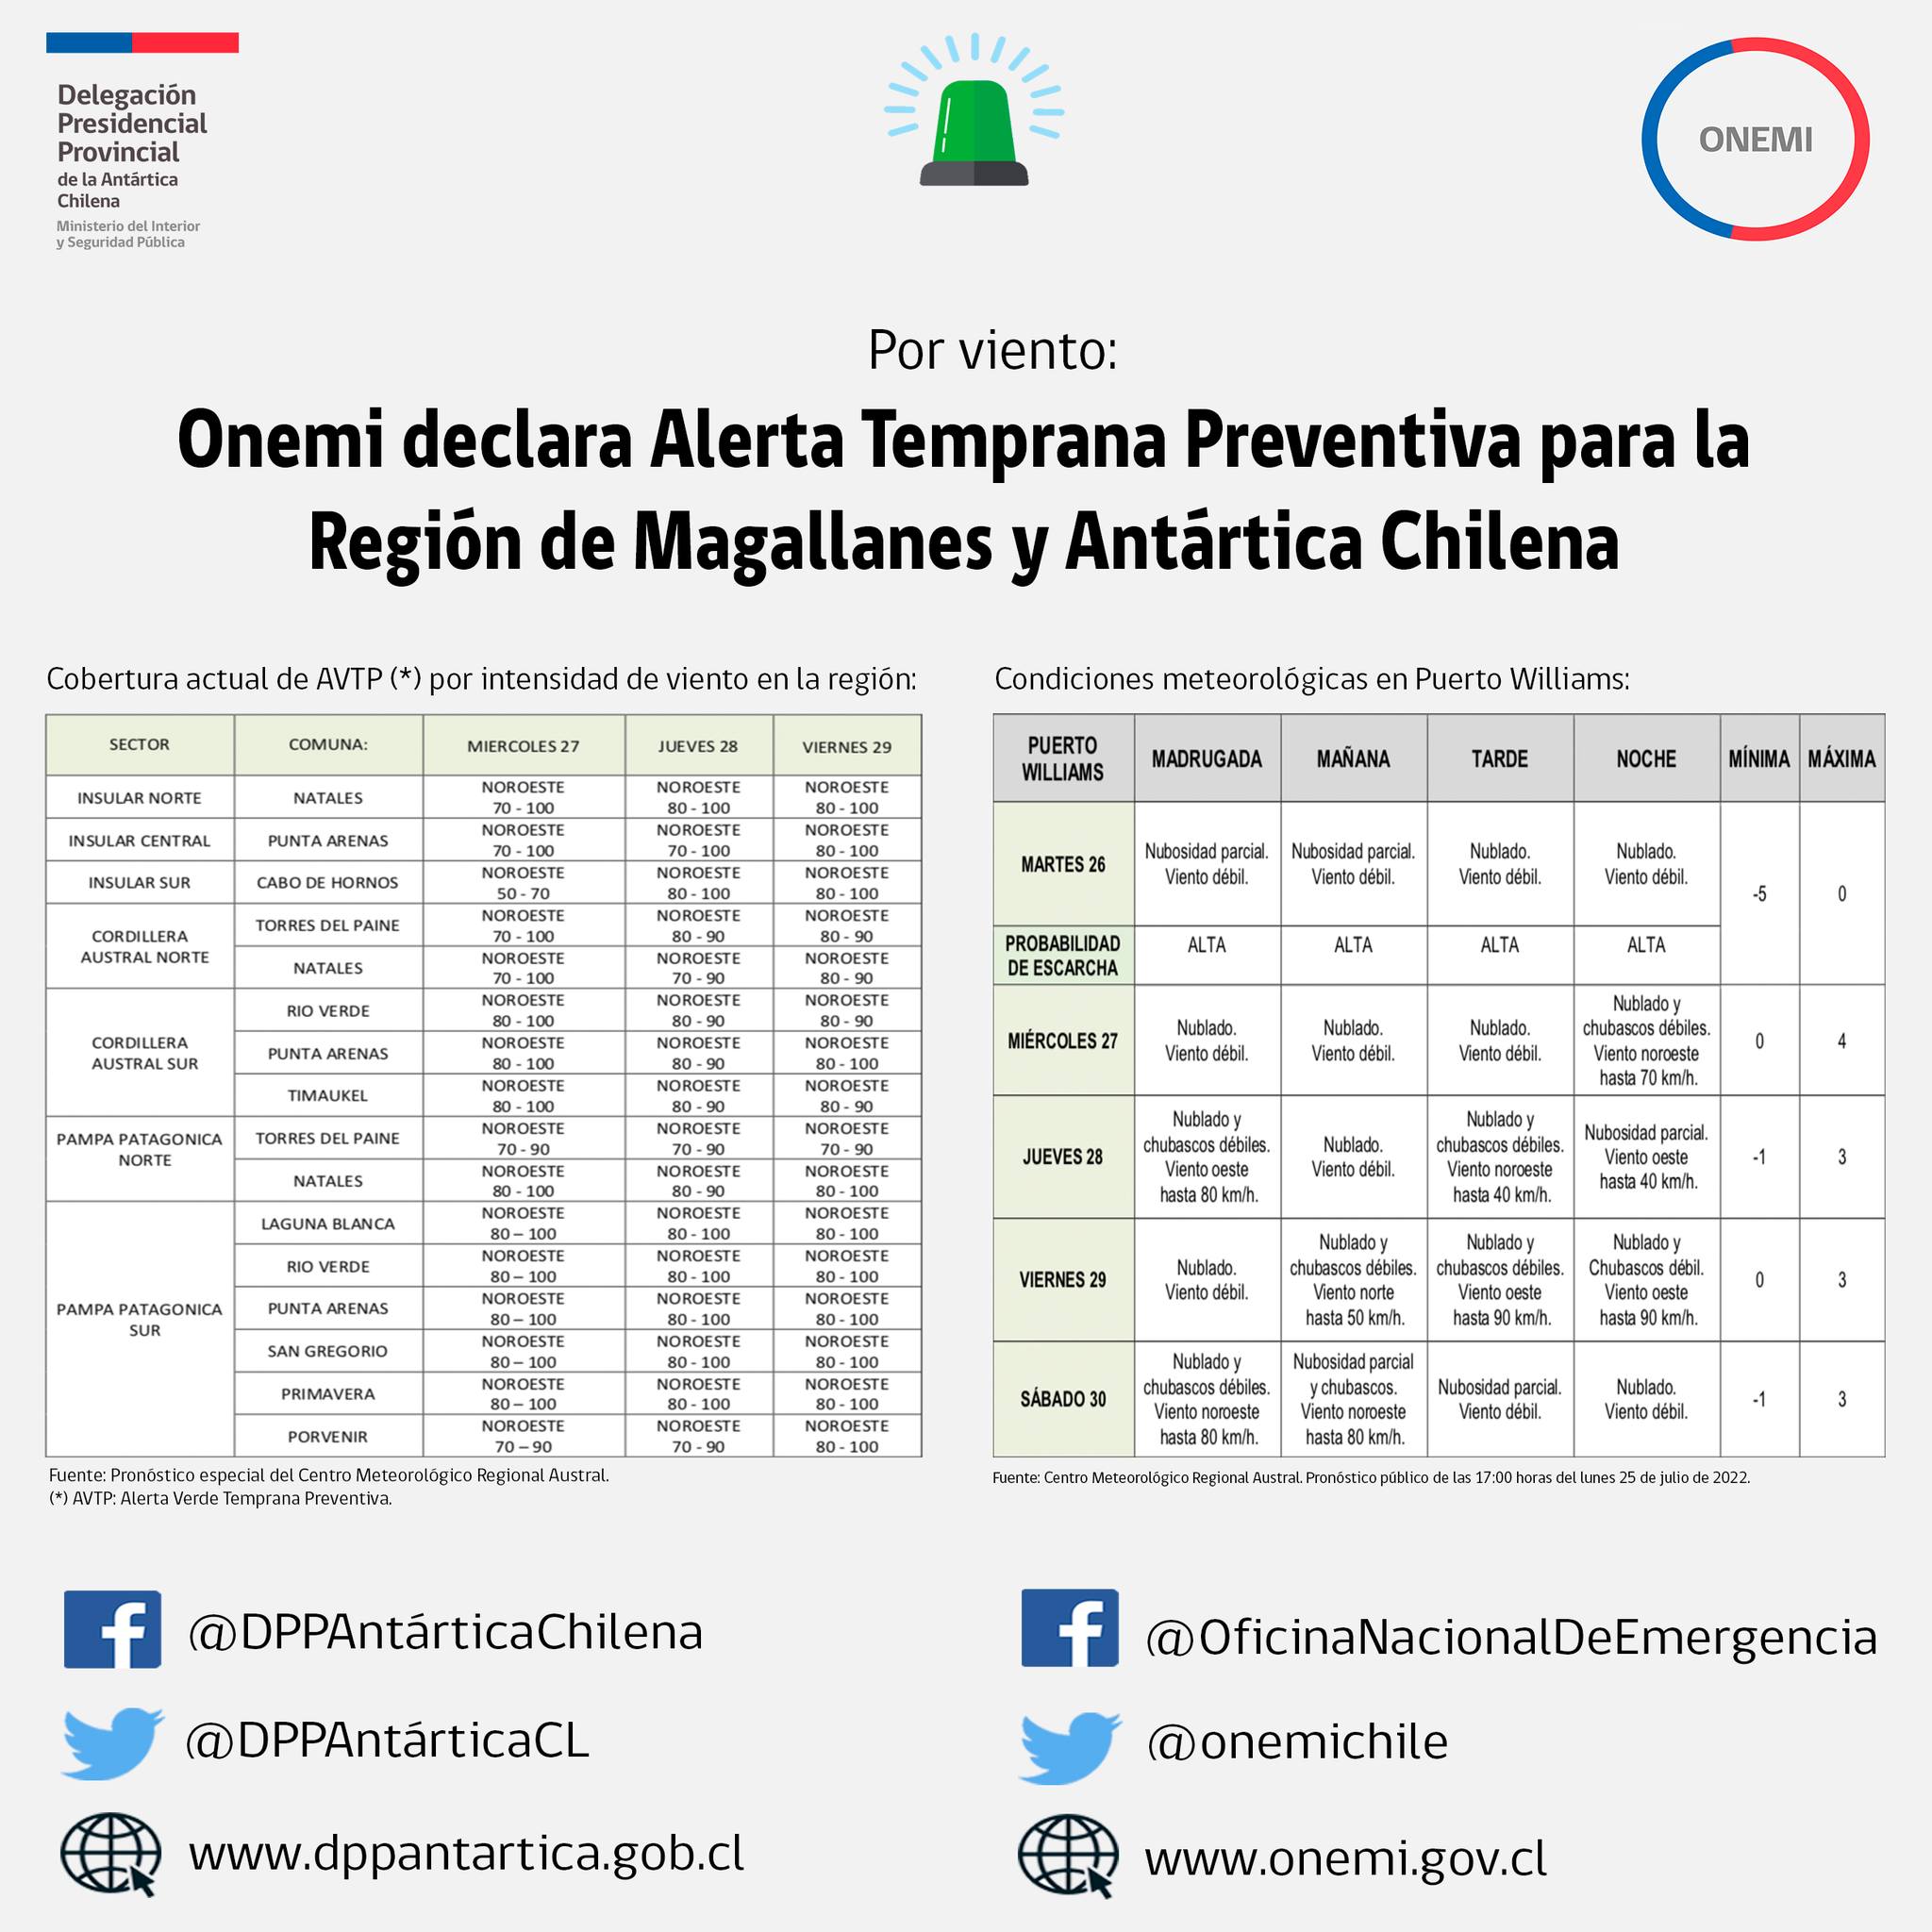 Onemi declara Alerta Temprana Preventiva para la Región de Magallanes y Antártica Chilena por viento